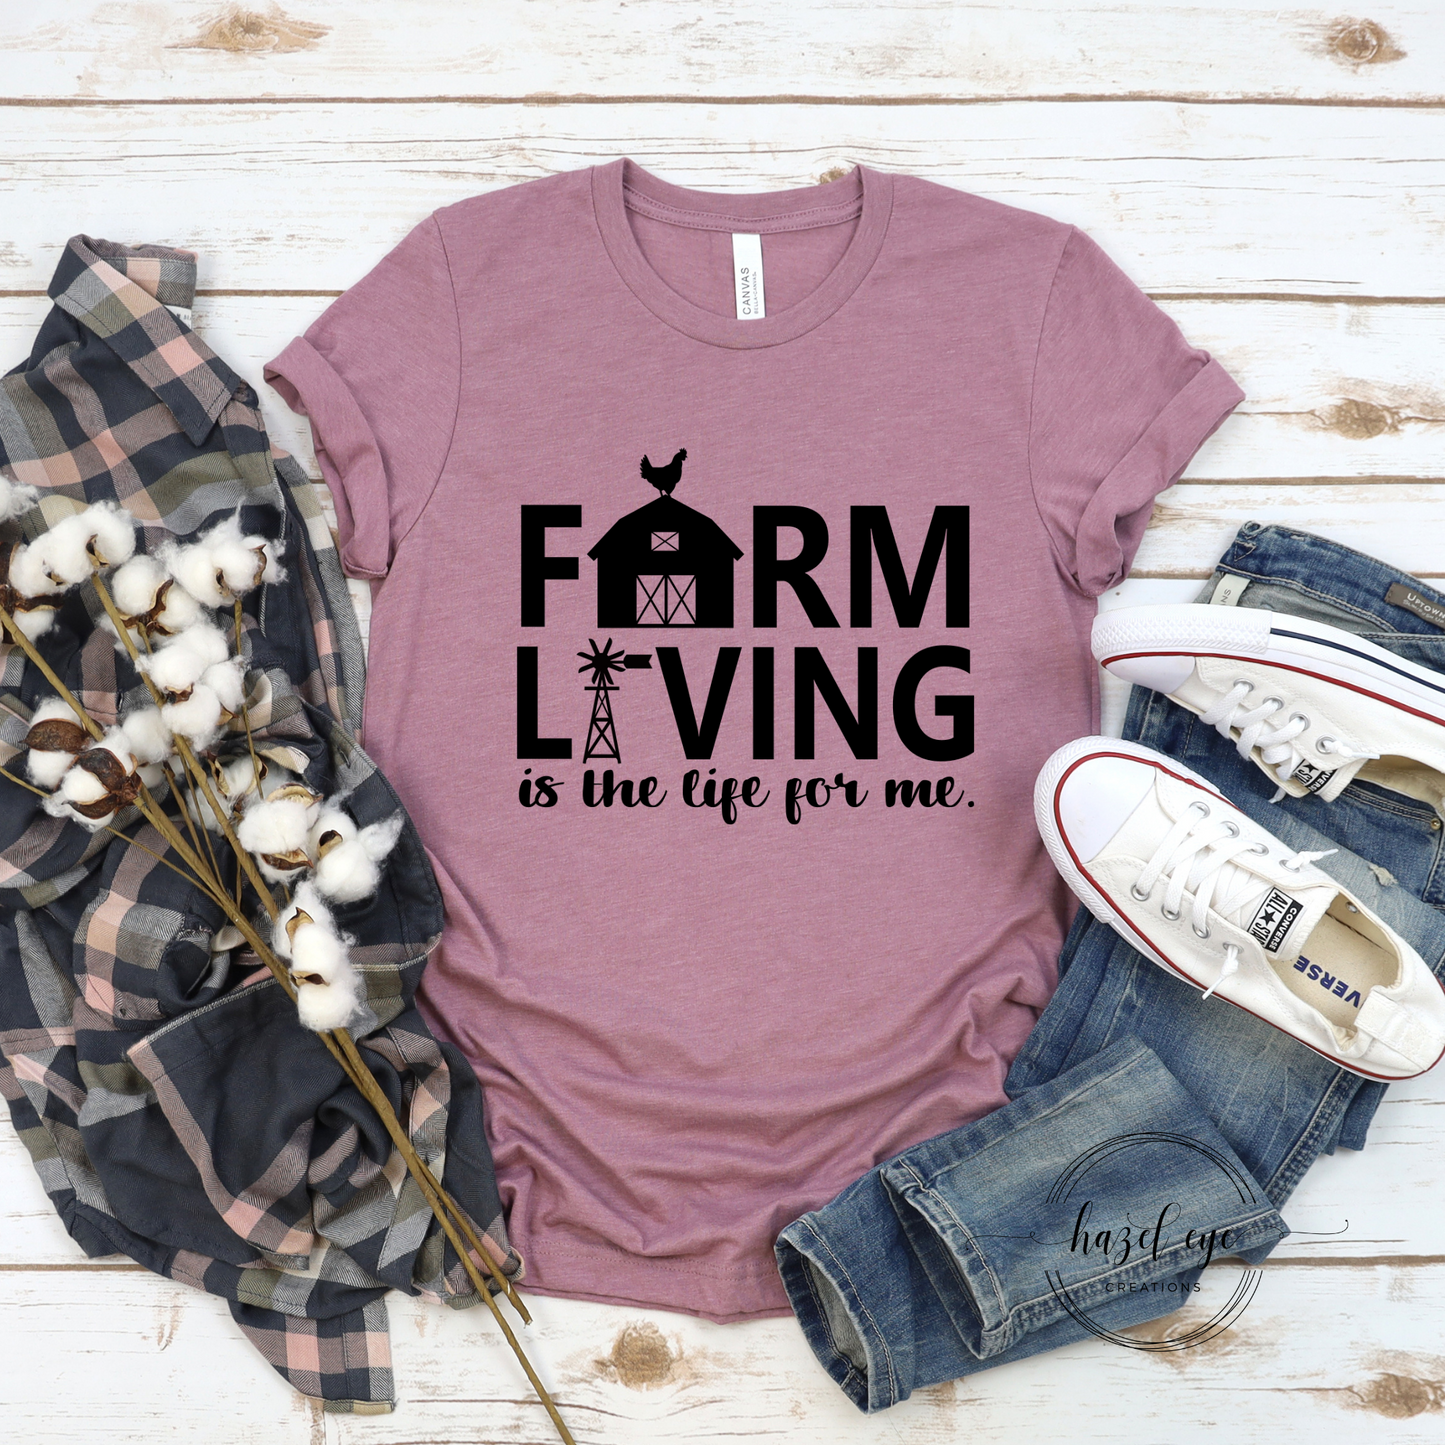 Farm living